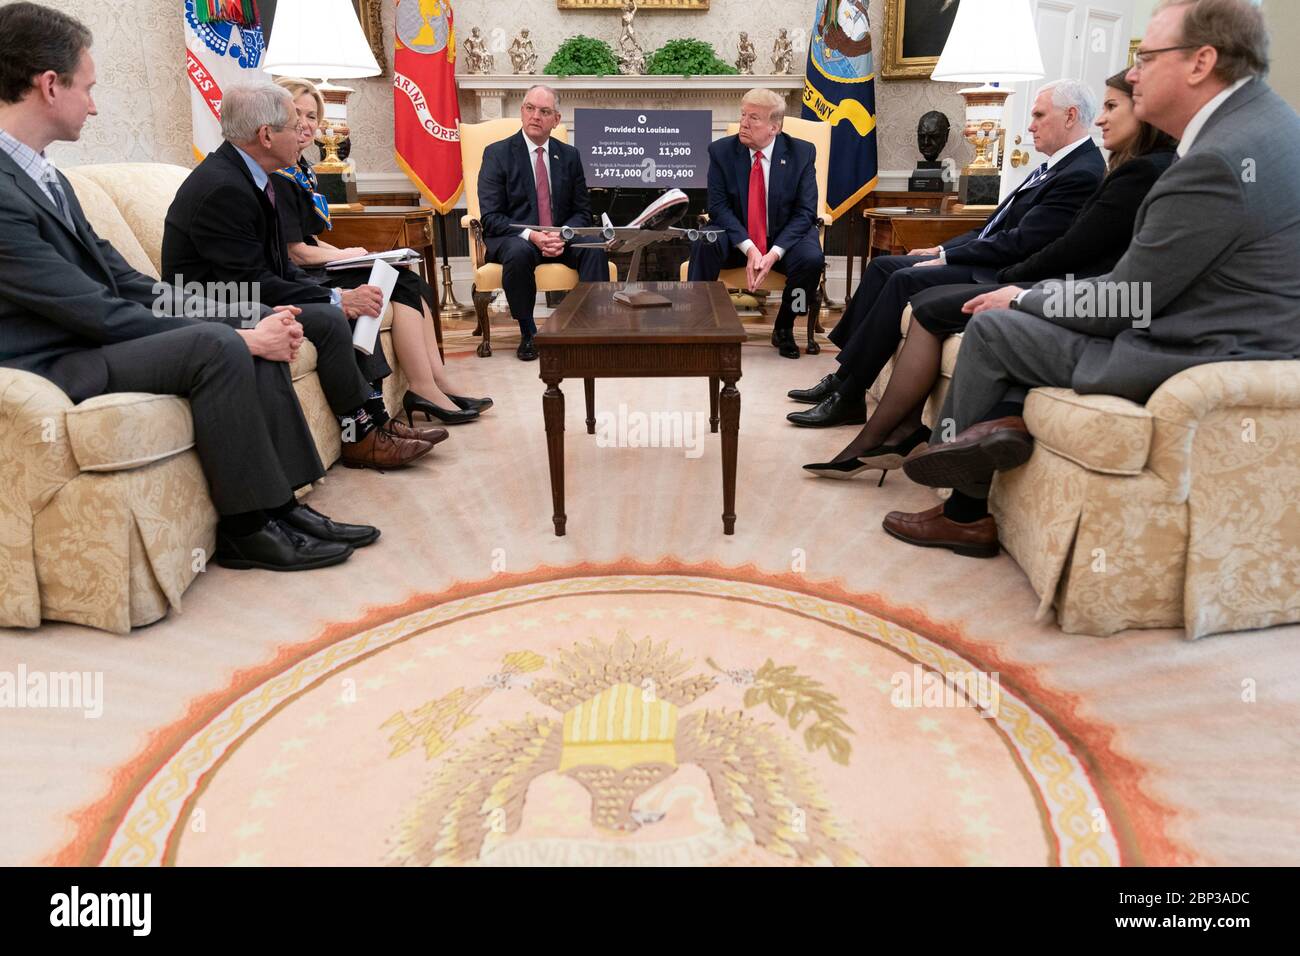 Le président américain Donald Trump rencontre le gouvernement de la Louisiane. John Bel Edwards discutera de la pandémie de coronavirus COVID-19 dans le Bureau ovale de la Maison Blanche le 29 avril 2020 à Washington, D.C. Banque D'Images